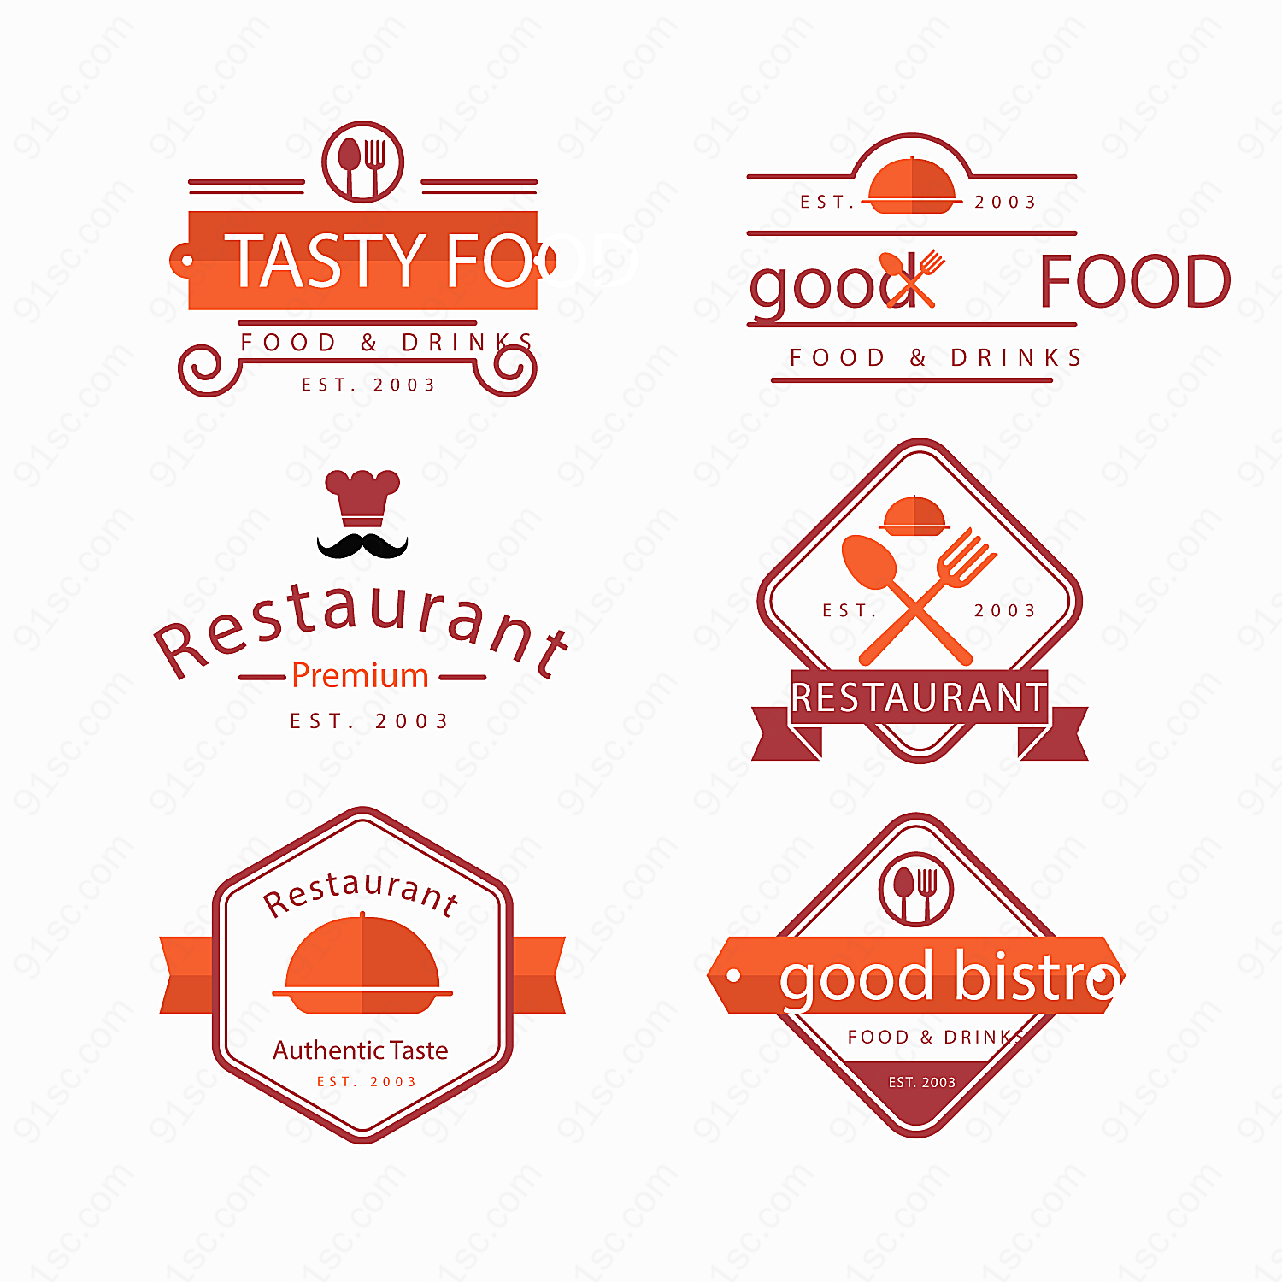 扁平化餐馆标志矢量logo图形